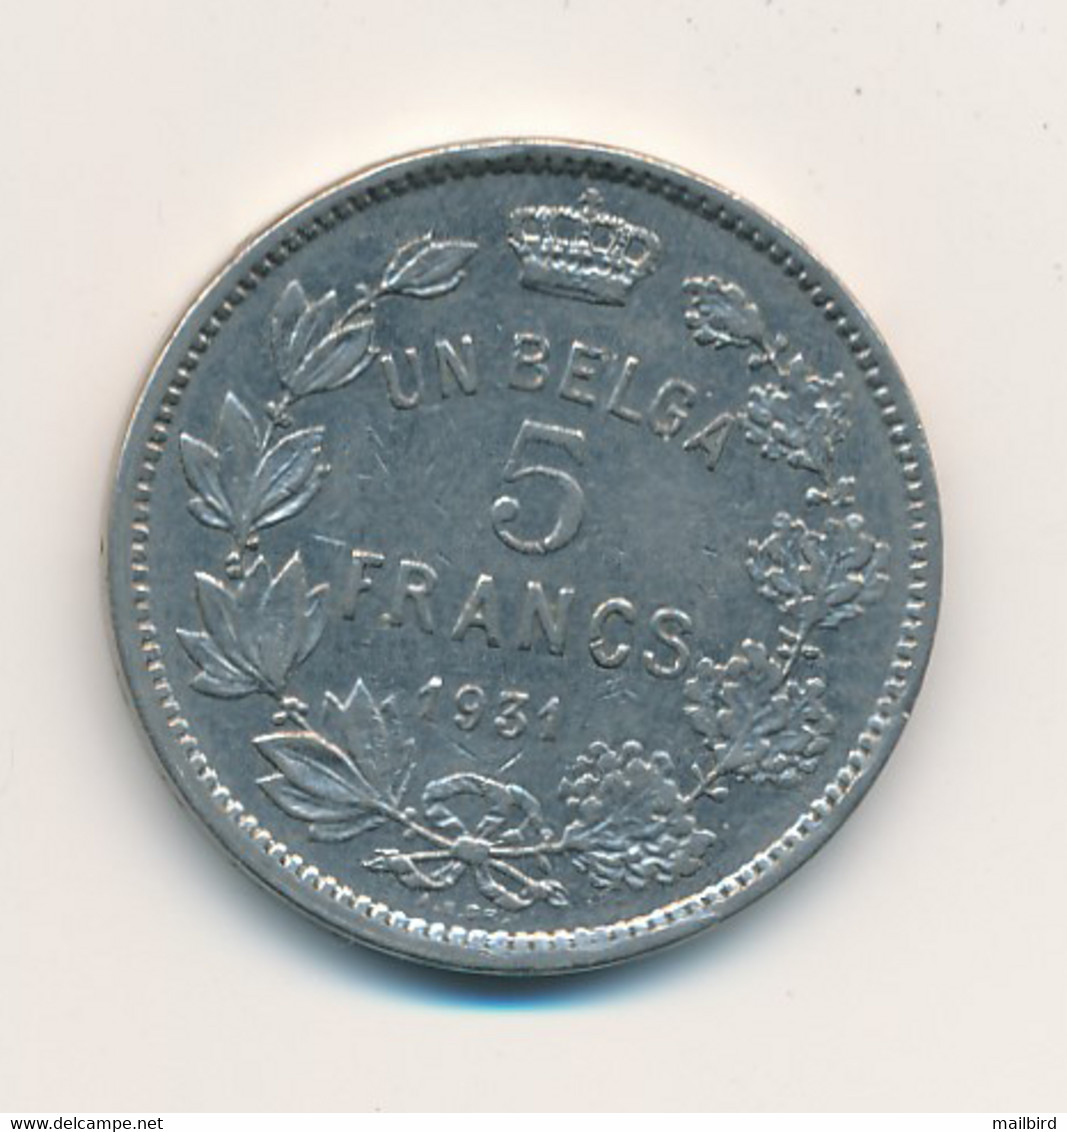 BELGIUM België Belgique - UN BELGA 5 Francs 1931 - 5 Frank & 1 Belga